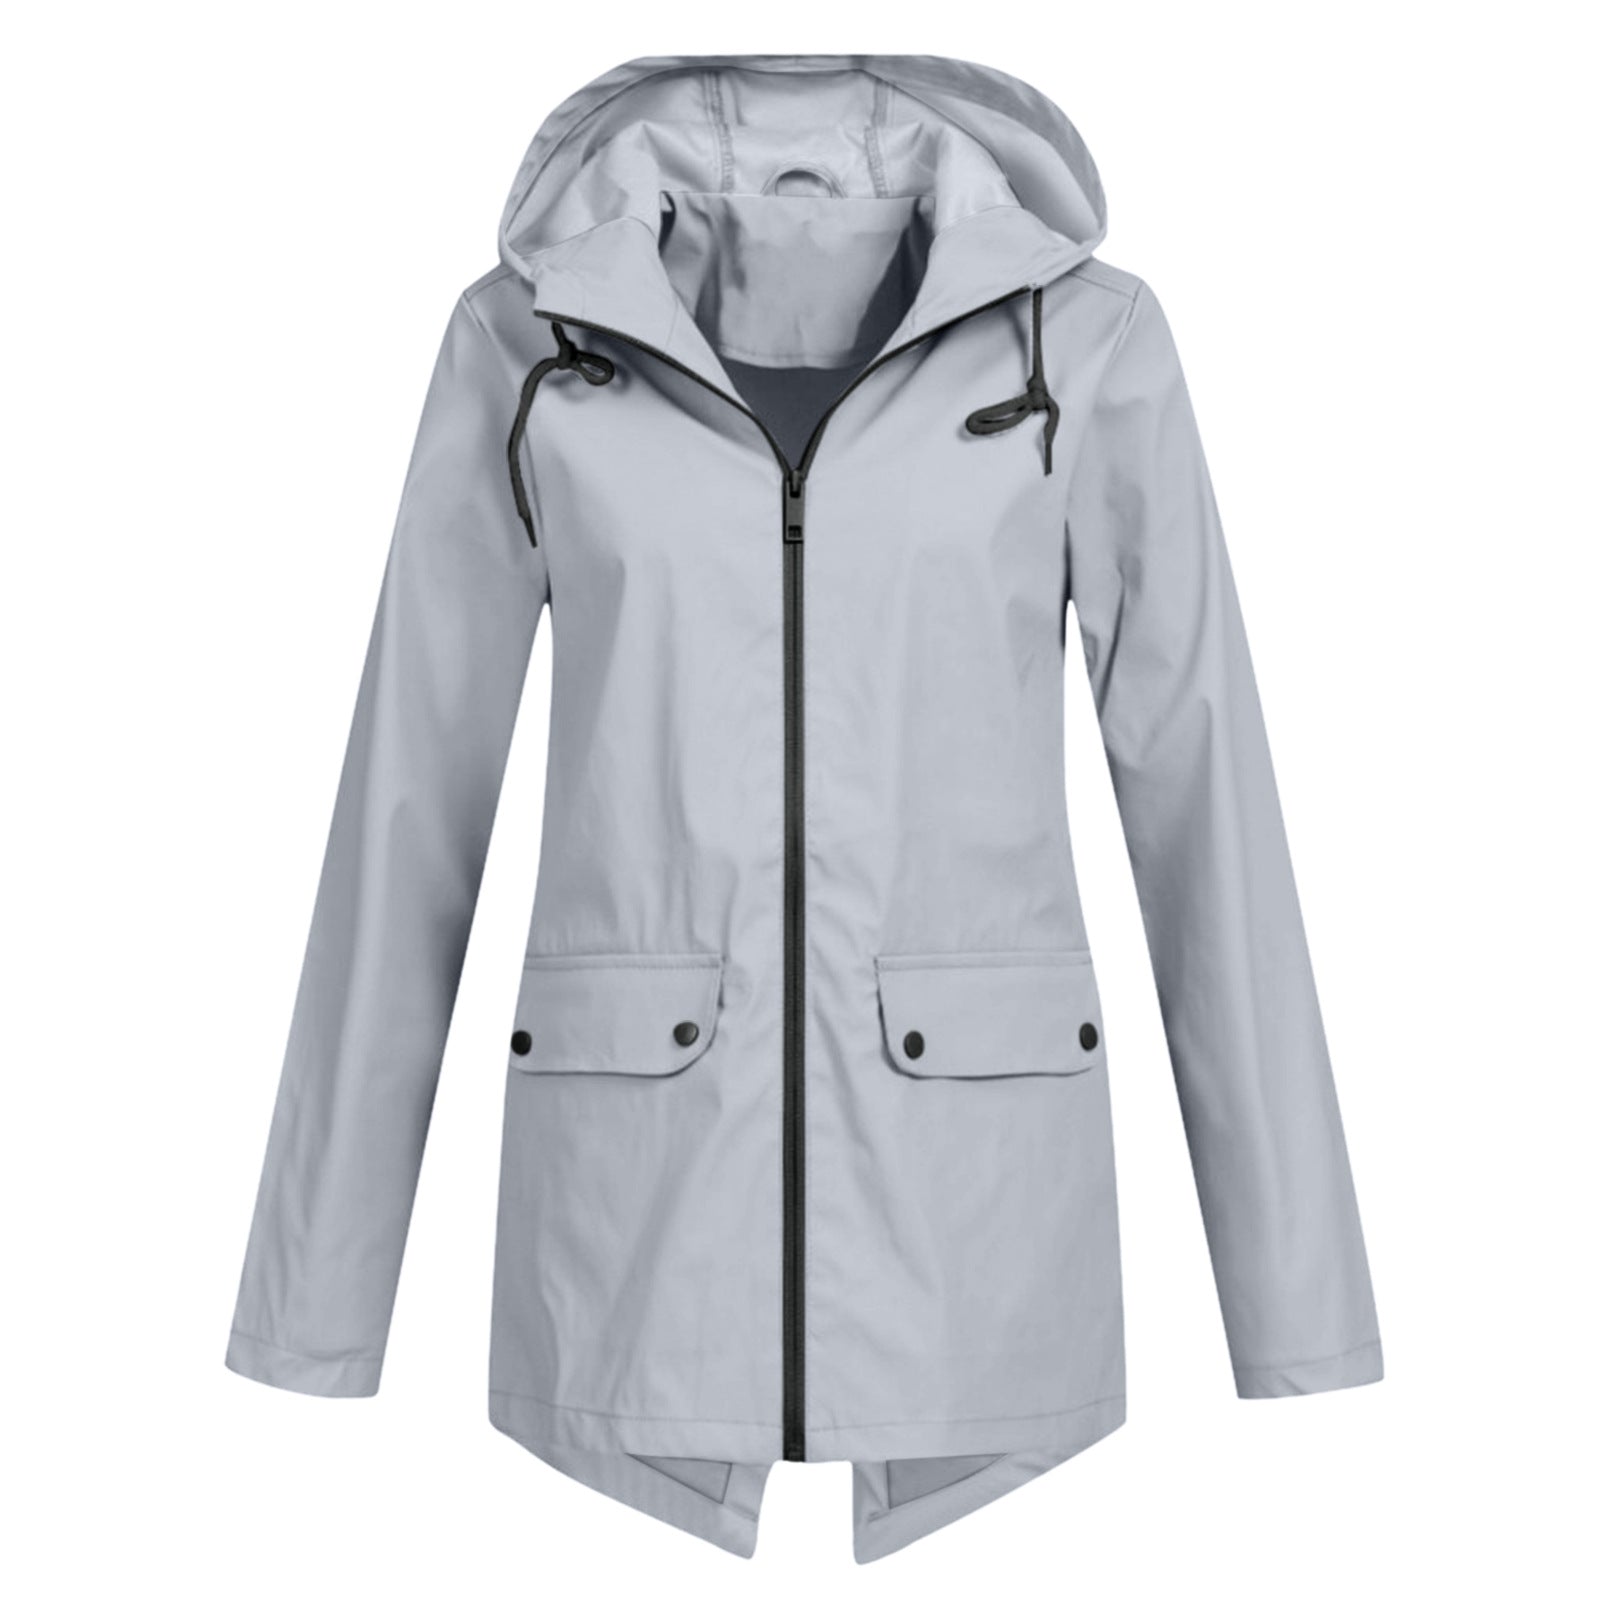 Women's Windcheater Zip Hooded Lightweight Outdoor Windproof Coats